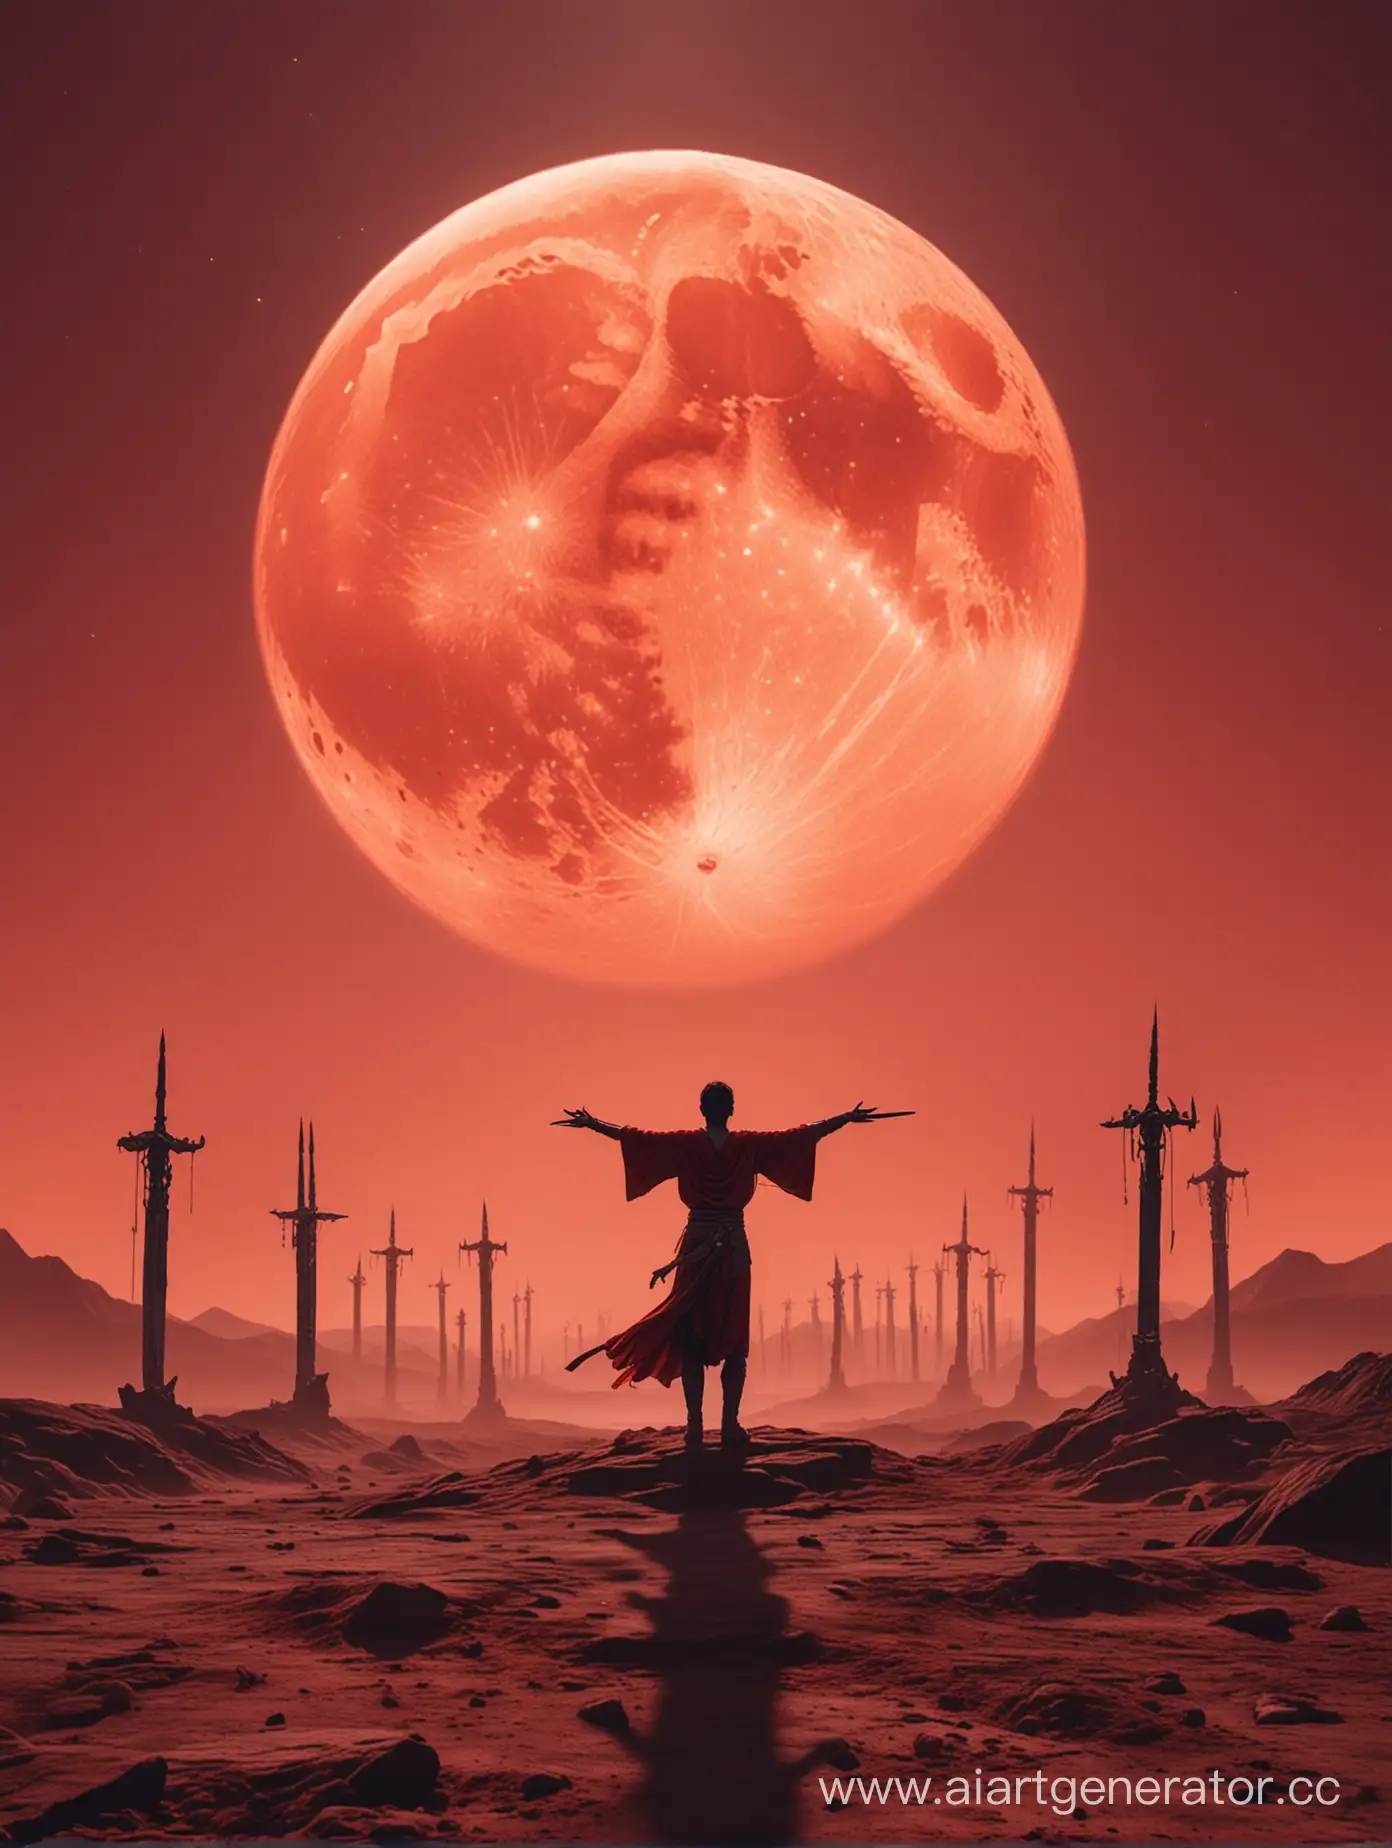 тело человека стоит на фоне огромной красной луны расправив руки в разные стороны, пейзаж видно больше, огромный меч в руке направлен вниз